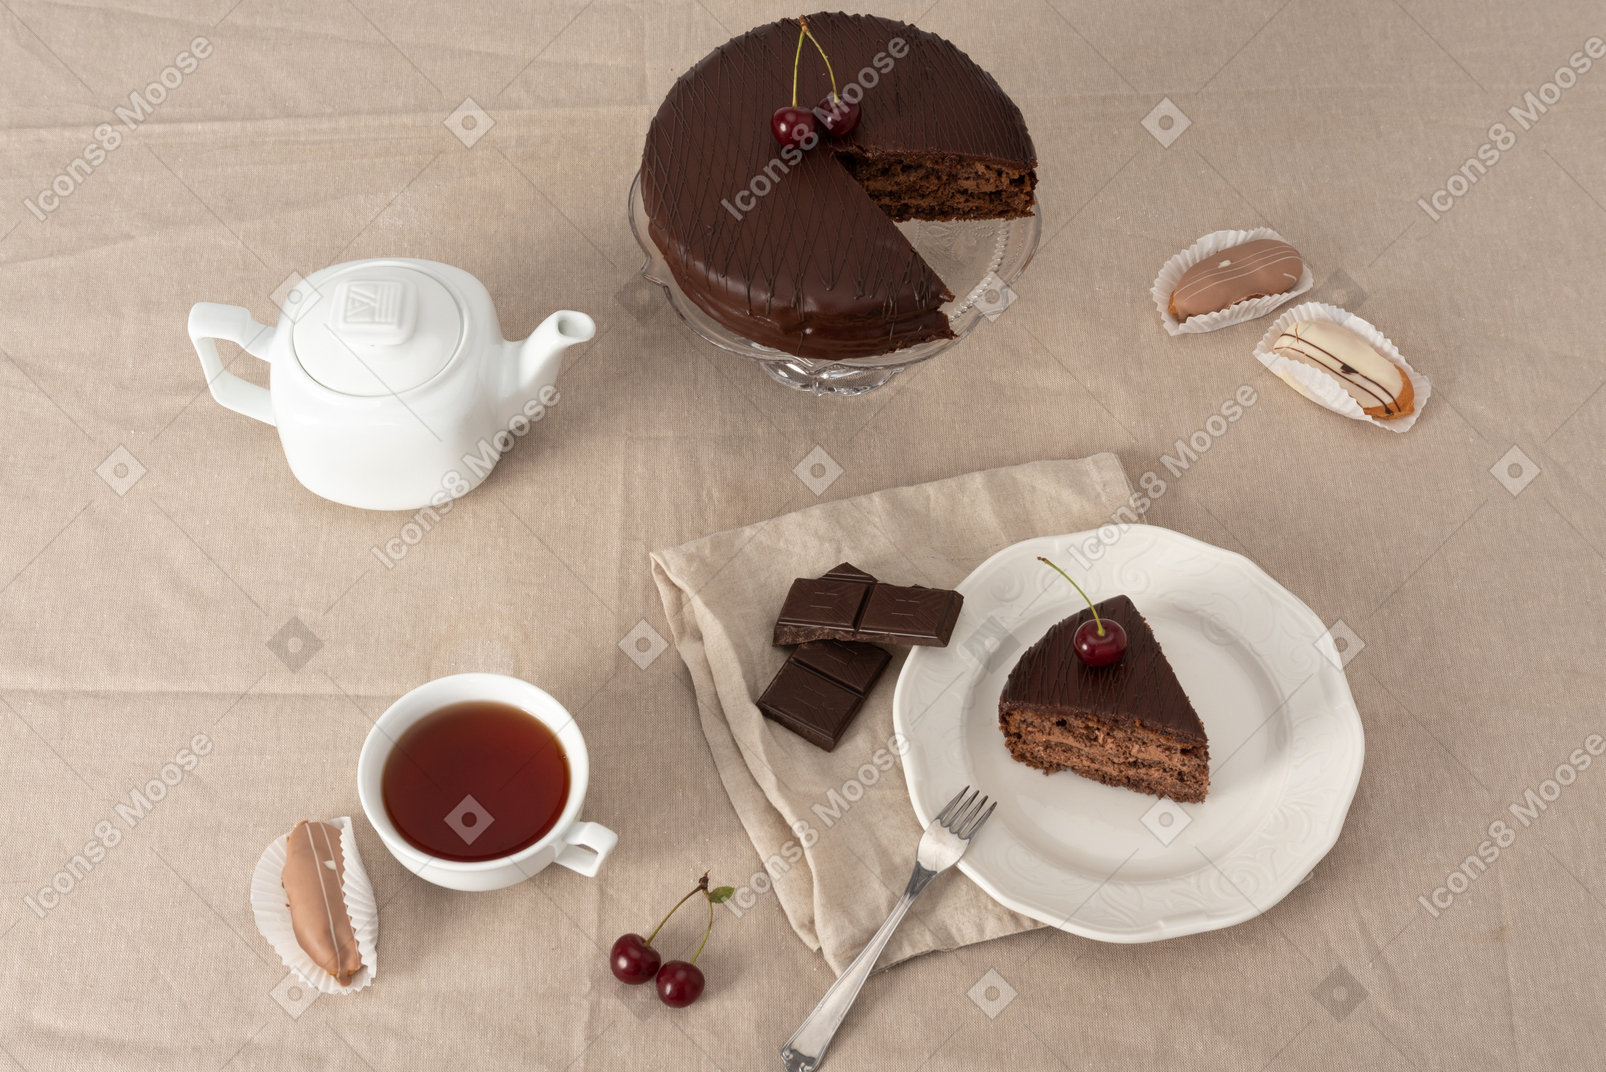 Gâteau au chocolat sur le support de gâteau, théière, tasse de thé et morceau de gâteau sur la plaque